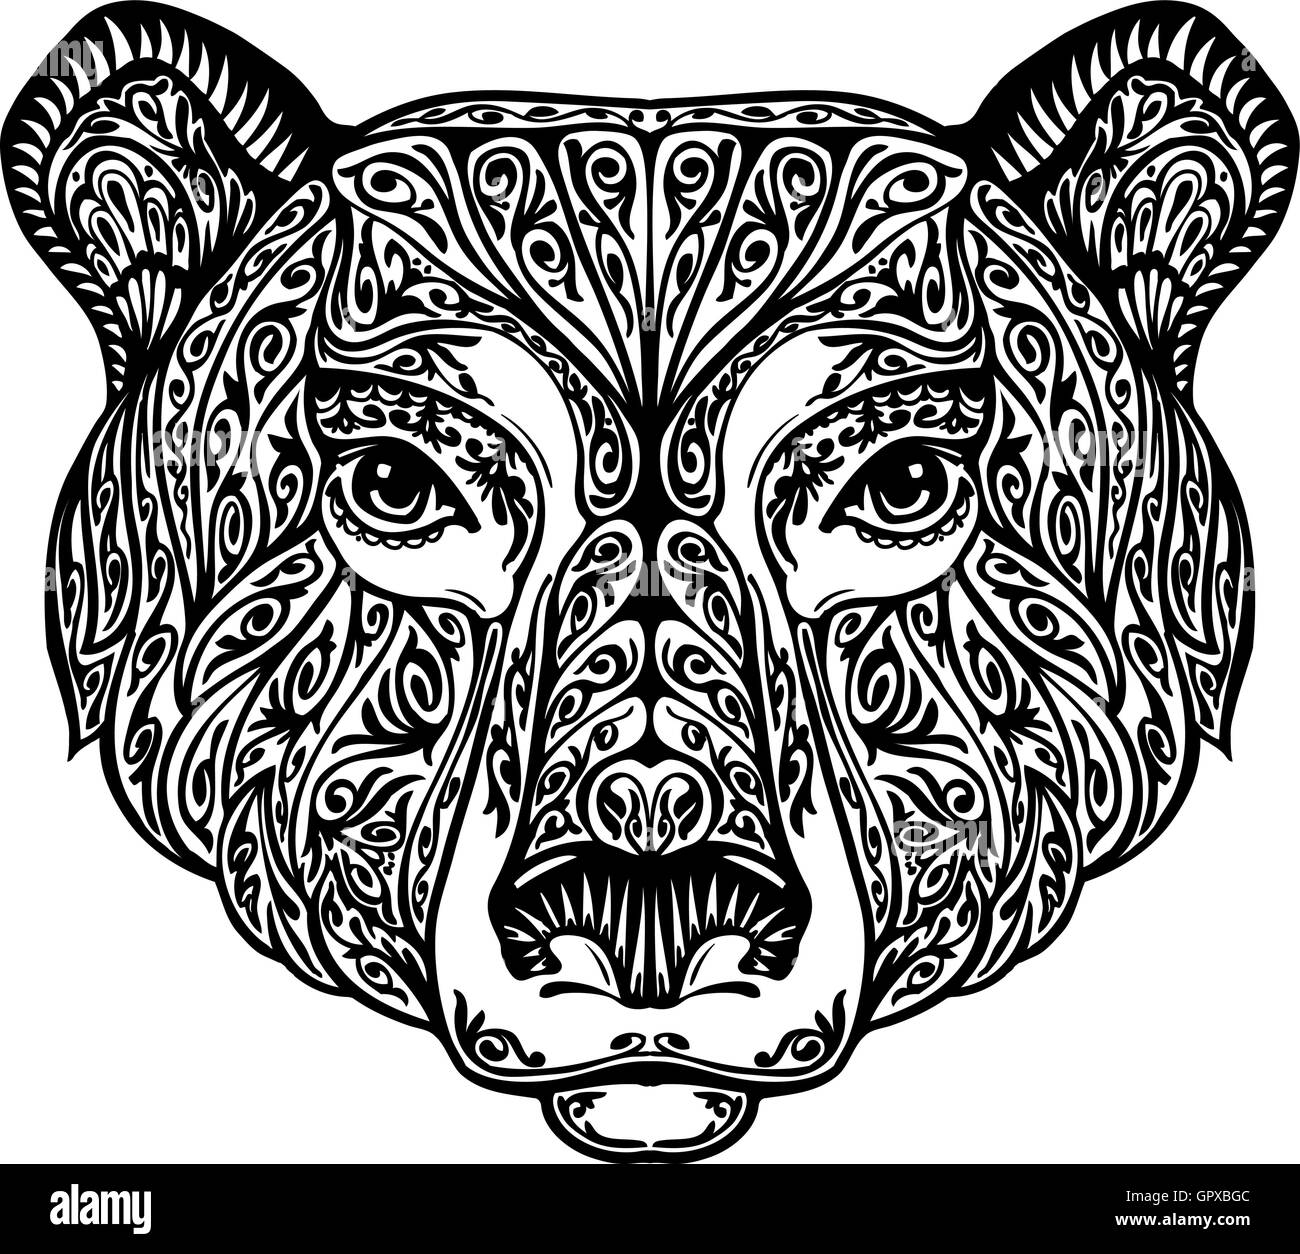 Bär, Grizzly oder Tier gemalt ethnische tribal Ornament. Hand gezeichnet Vektor-Illustration mit floralen Elementen Stock Vektor